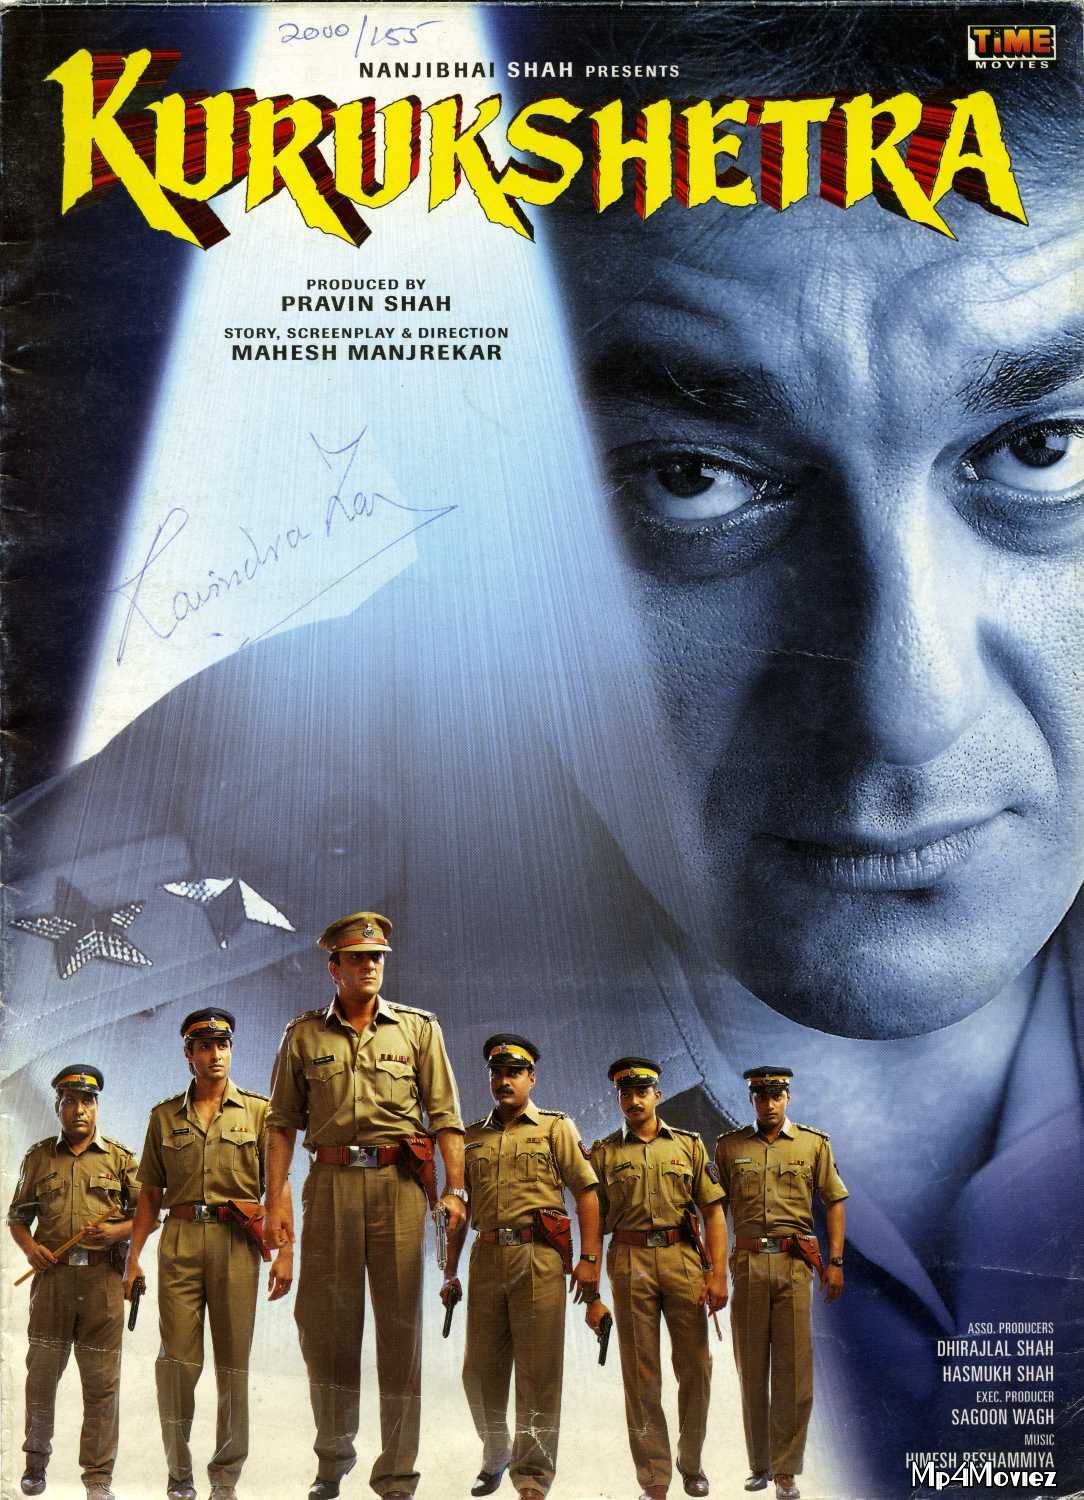 Kurukshetra (2000) Hindi Movie HDRip download full movie